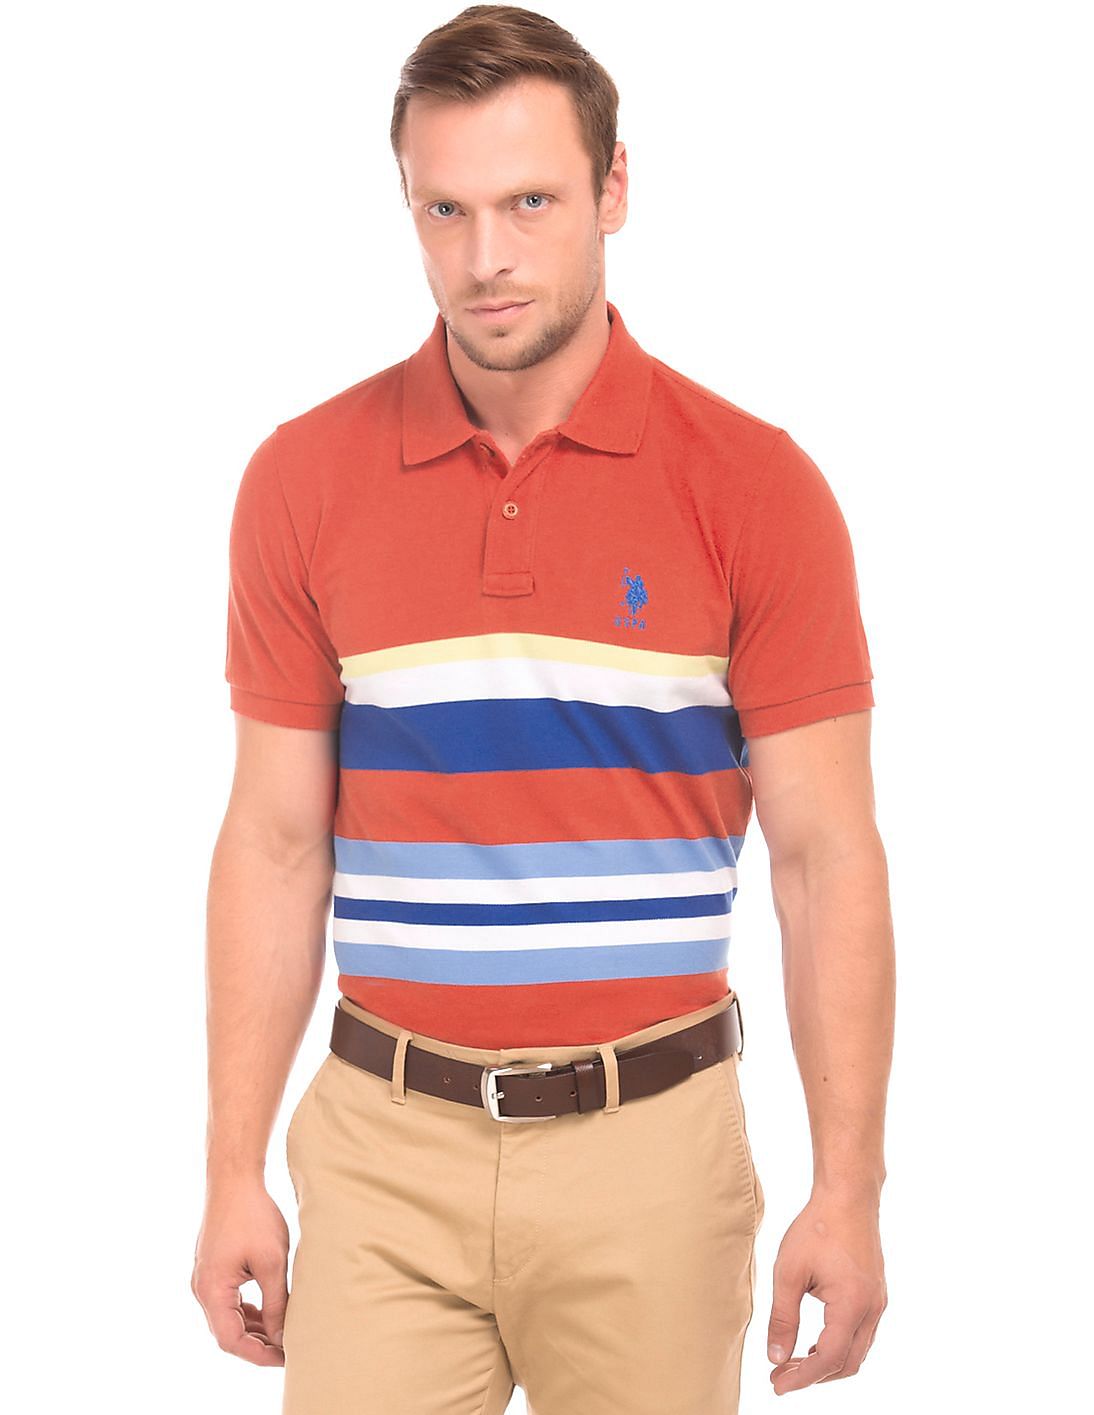 Buy U.S. Polo Assn. Men Red Pique Striped Polo Shirt - NNNOW.com